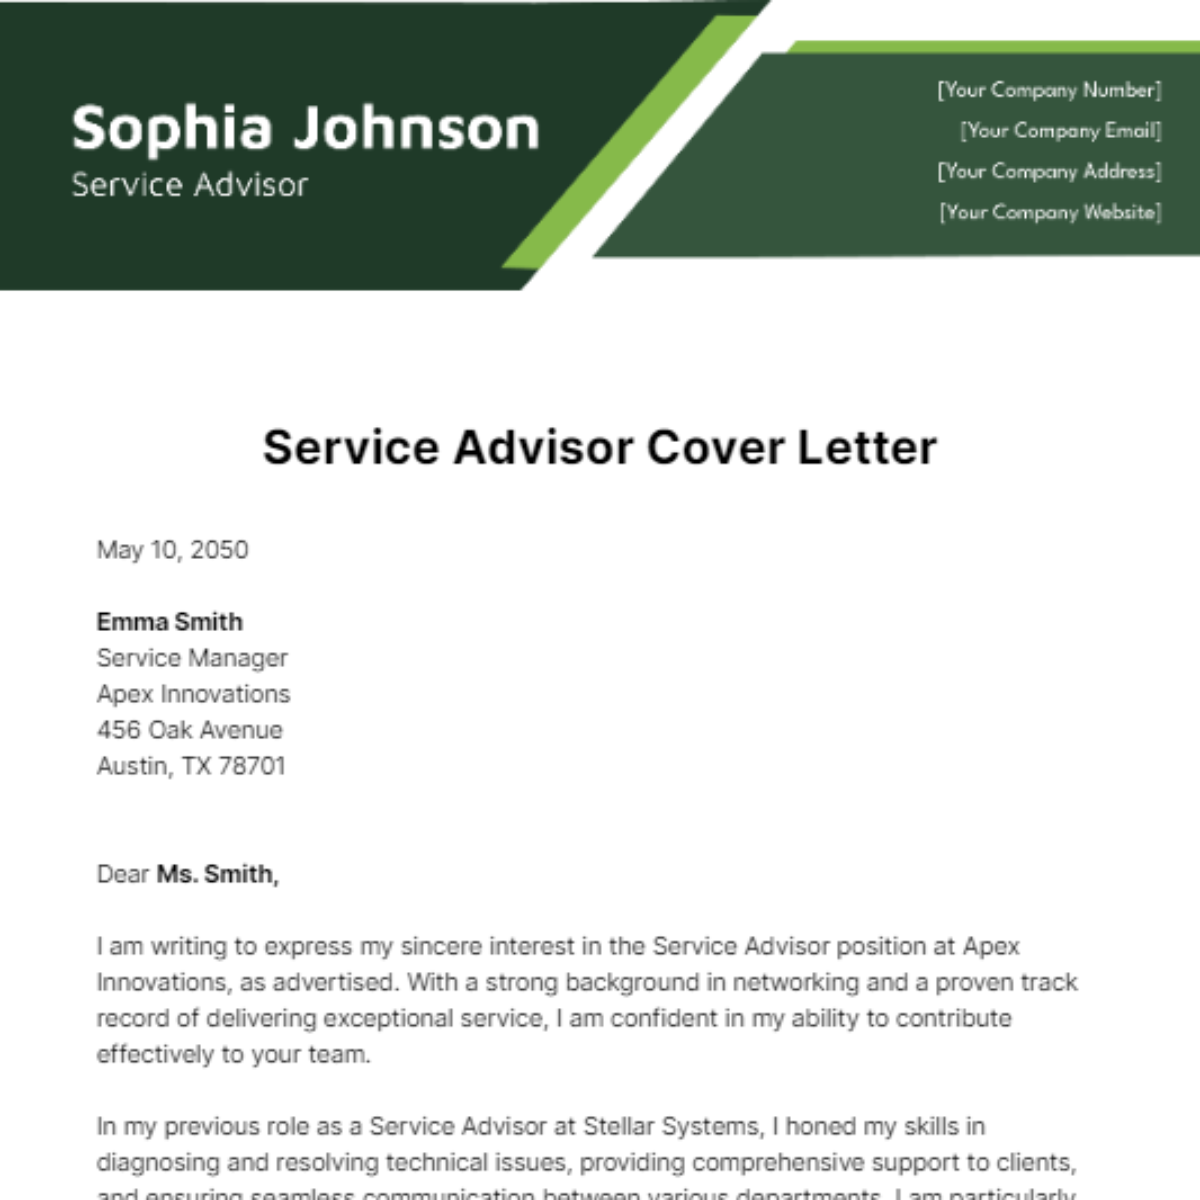 Service Advisor Cover Letter Template